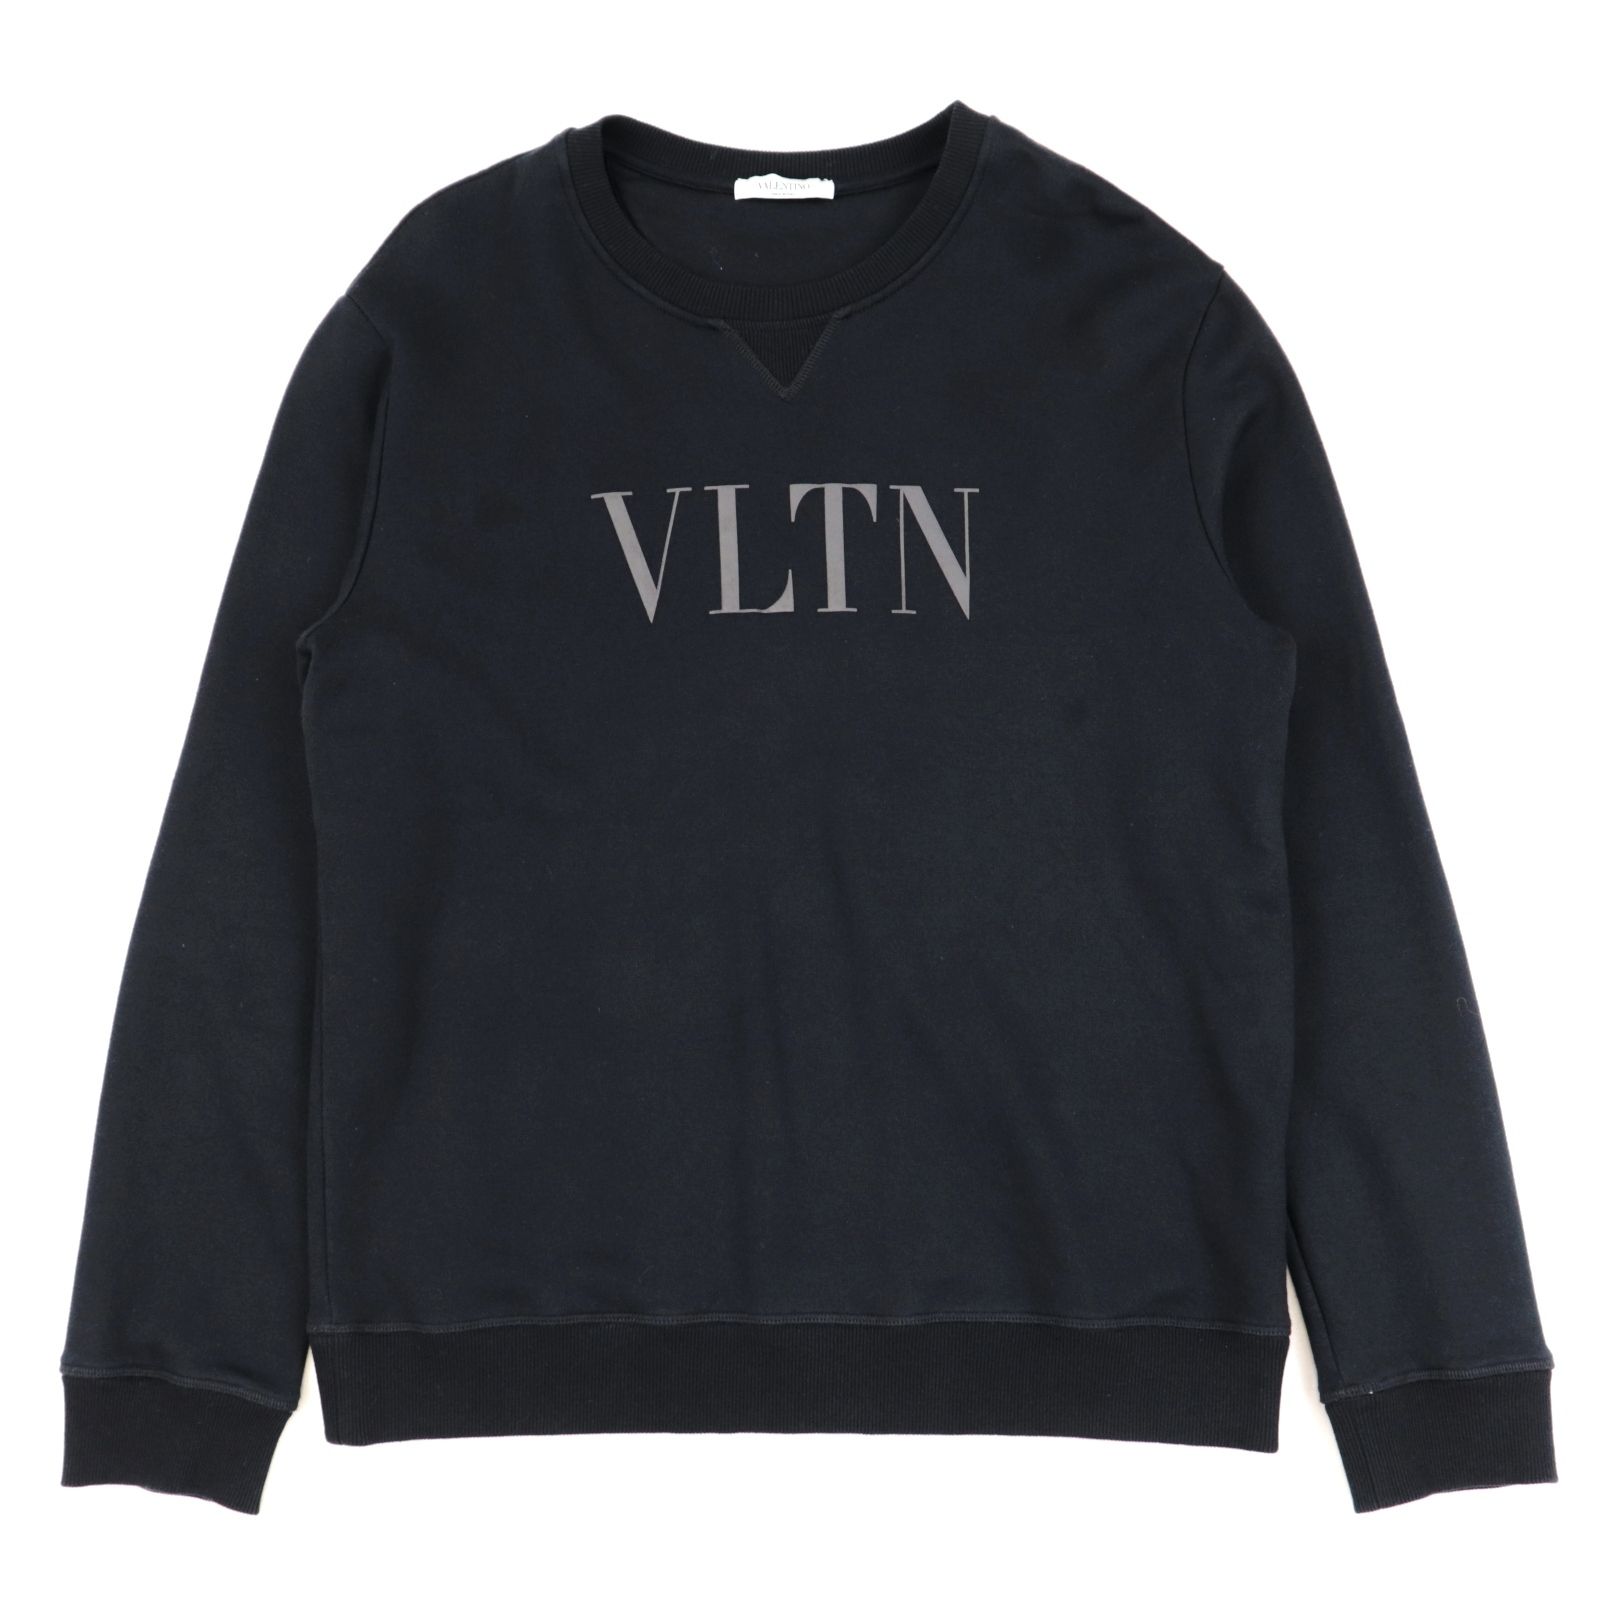 【新品】VALENTINO スウェット トレーナー VLTN ロゴプリント黒 S